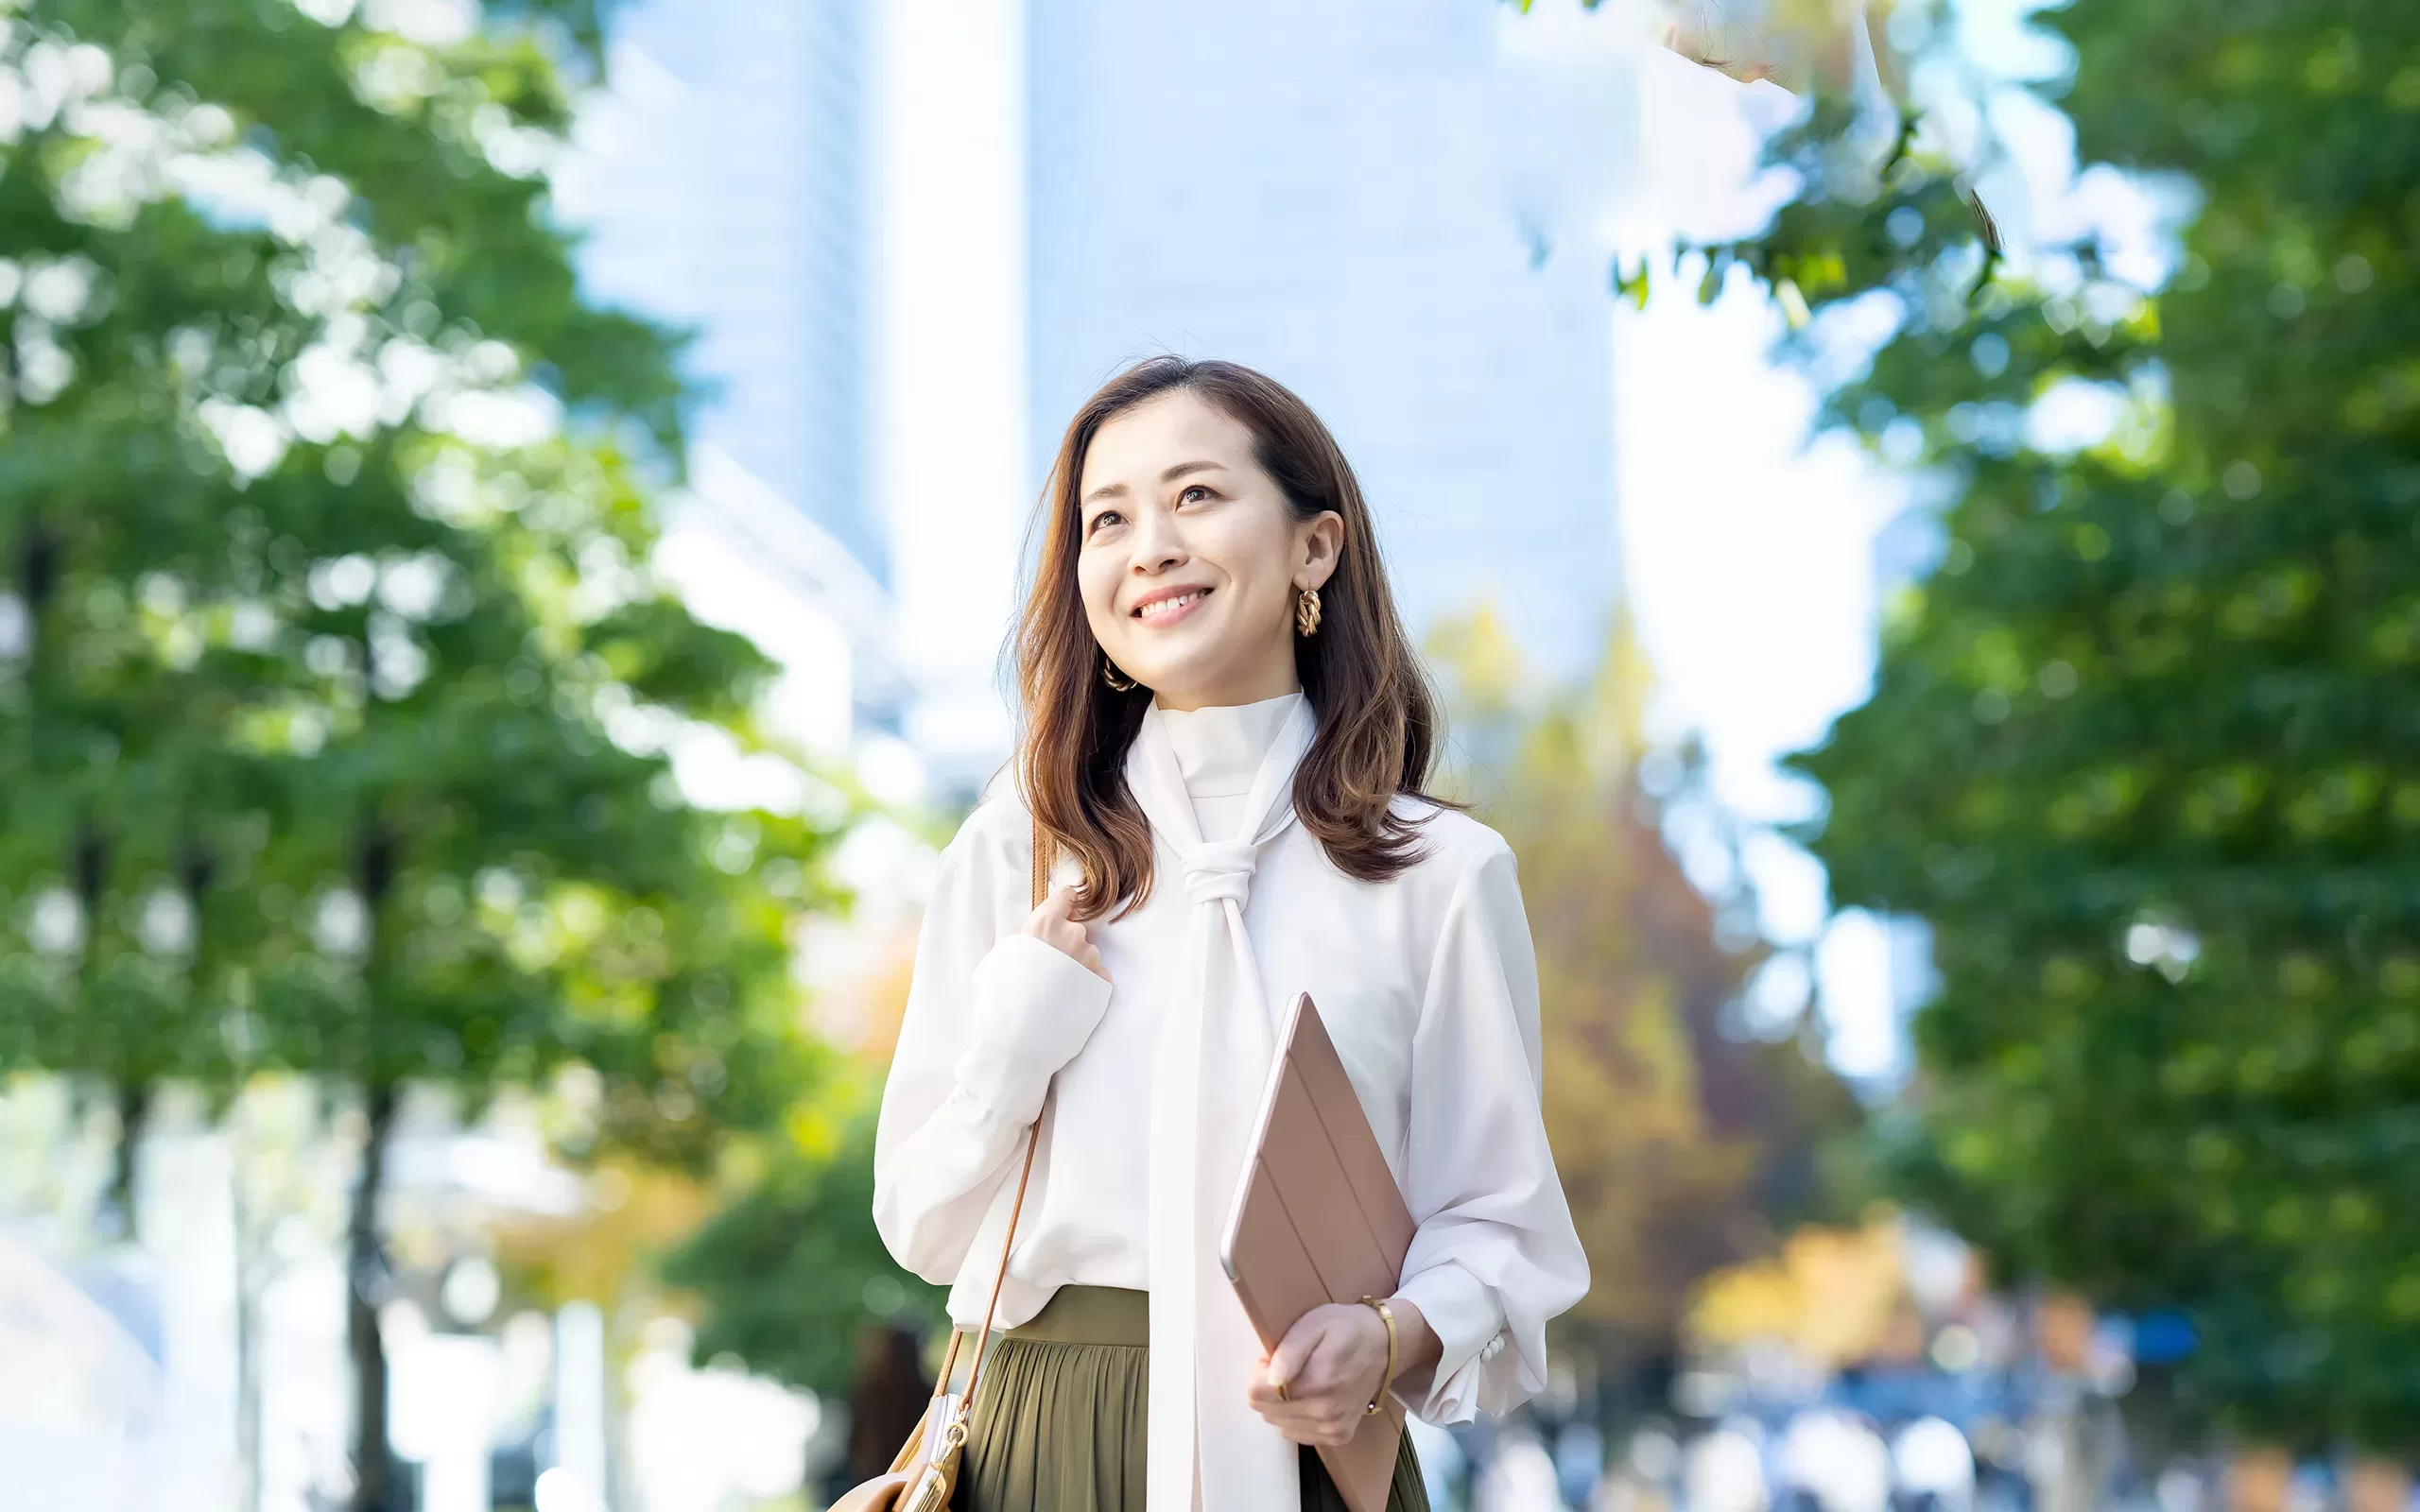 Femme japonaise souriante dehors avec une tablette de la main et bien habillée